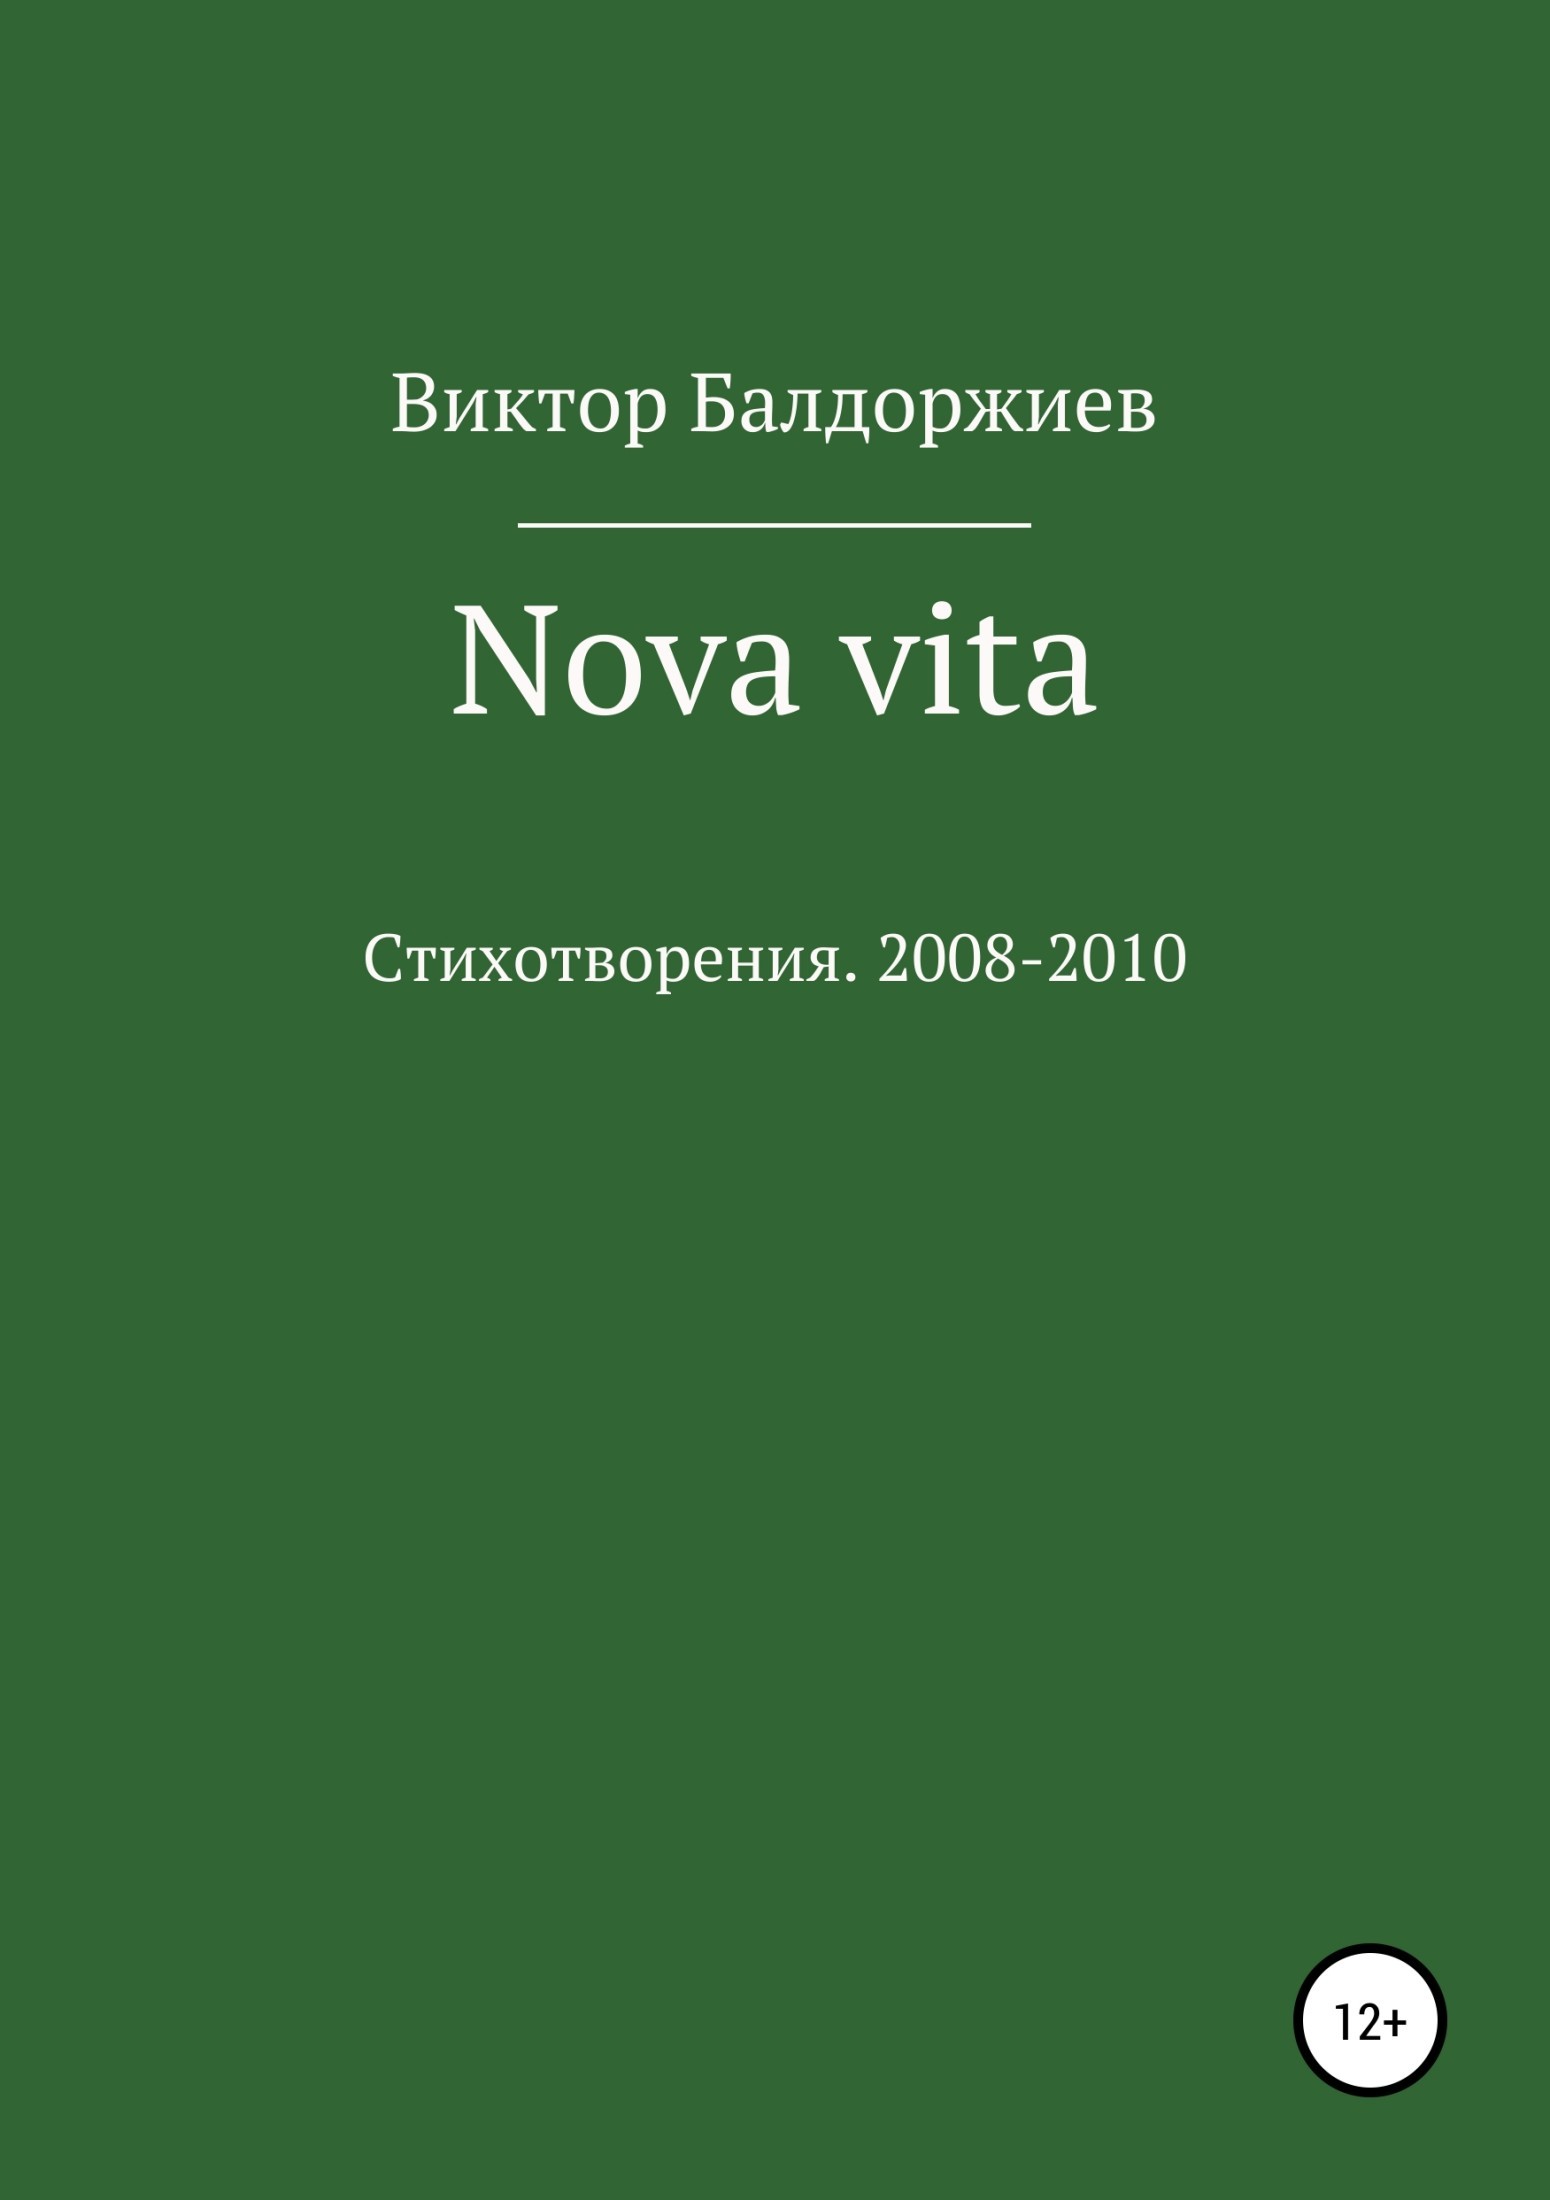 Книга новые материалы. Vita Nova книга. Книги Виктора Балдоржиева. Vita Nova о чем книга.